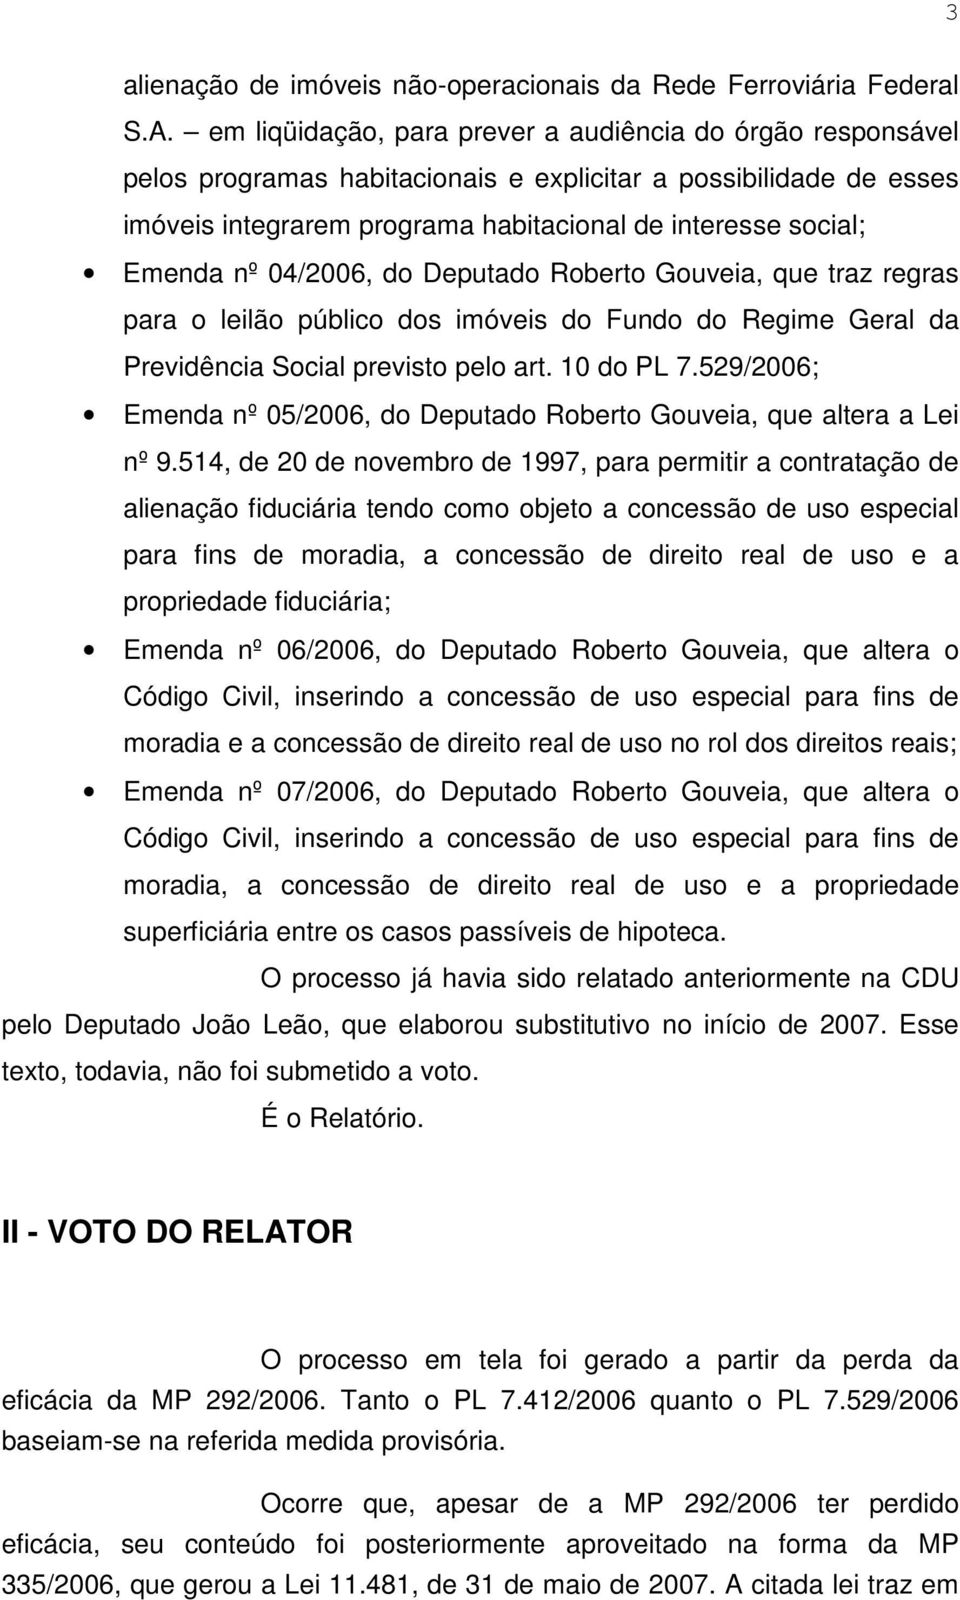 04/2006, do Deputado Roberto Gouveia, que traz regras para o leilão público dos imóveis do Fundo do Regime Geral da Previdência Social previsto pelo art. 10 do PL 7.